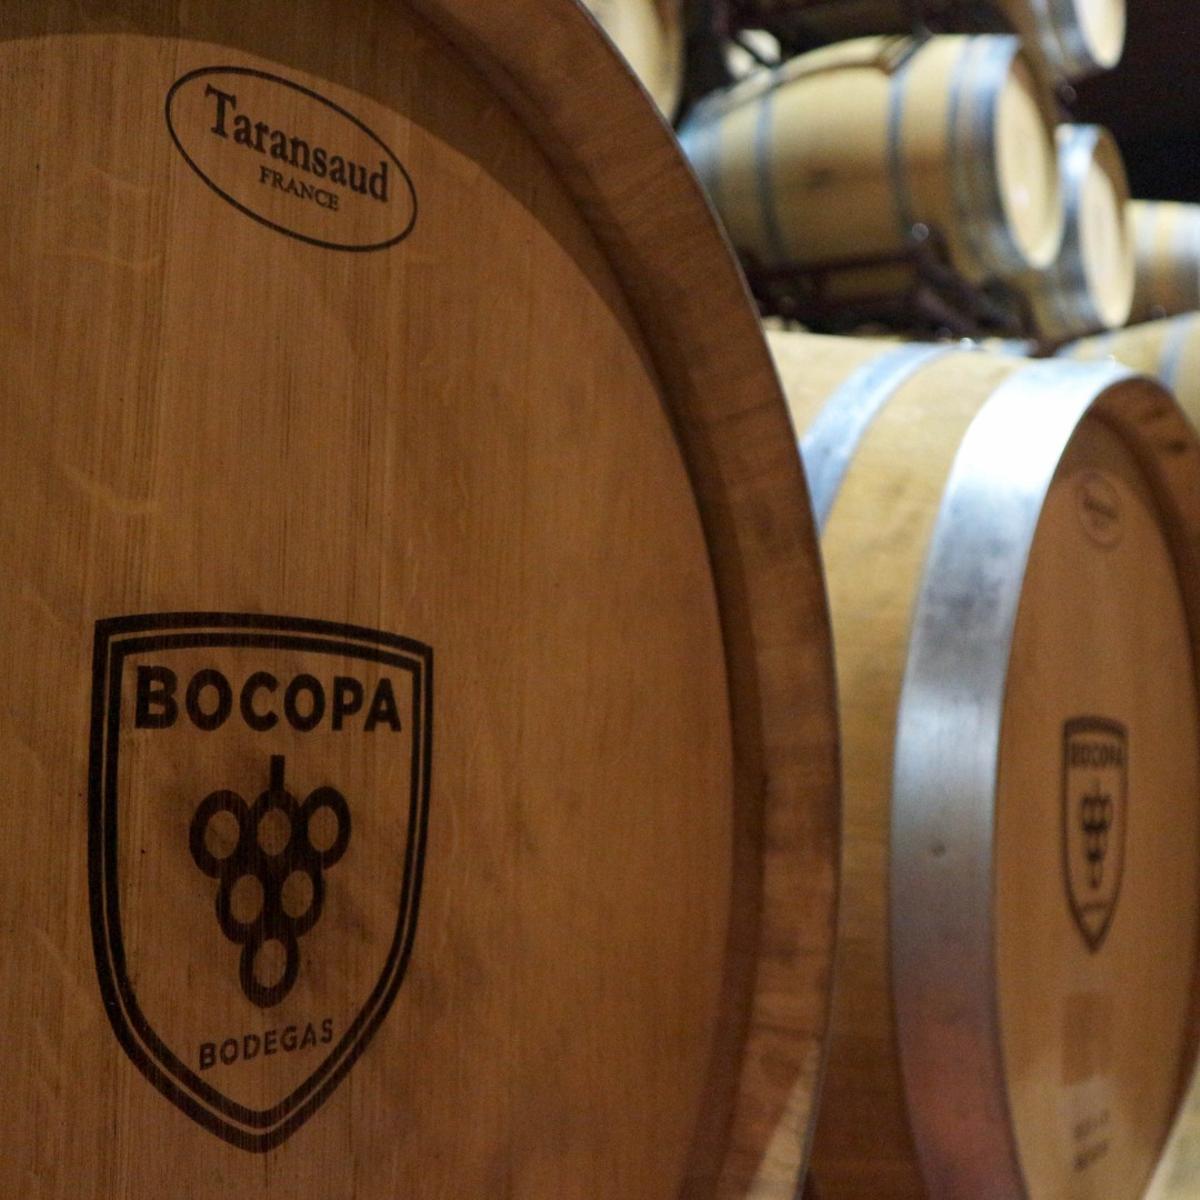 Vinos tintos, blancos y espumantes son algunas de las variedades que ofrece Bocopa.